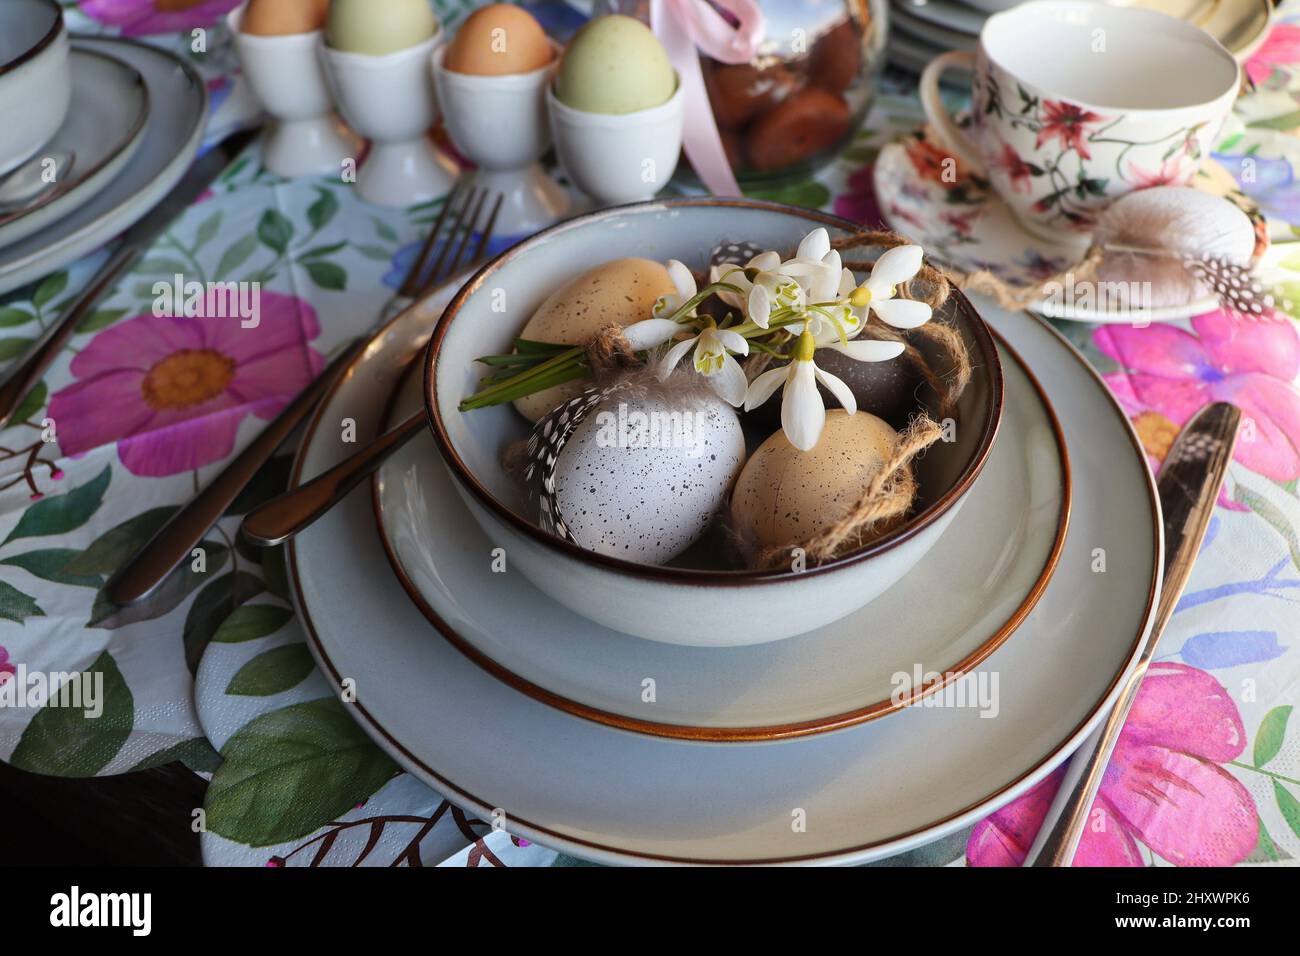 Table de Pâques élégante avec œuf dans un bol sur la table. Oeuf de pâques moderne teint naturel, fleurs sur l'assiette et couverts. Décorations de table de fête de Pâques Banque D'Images